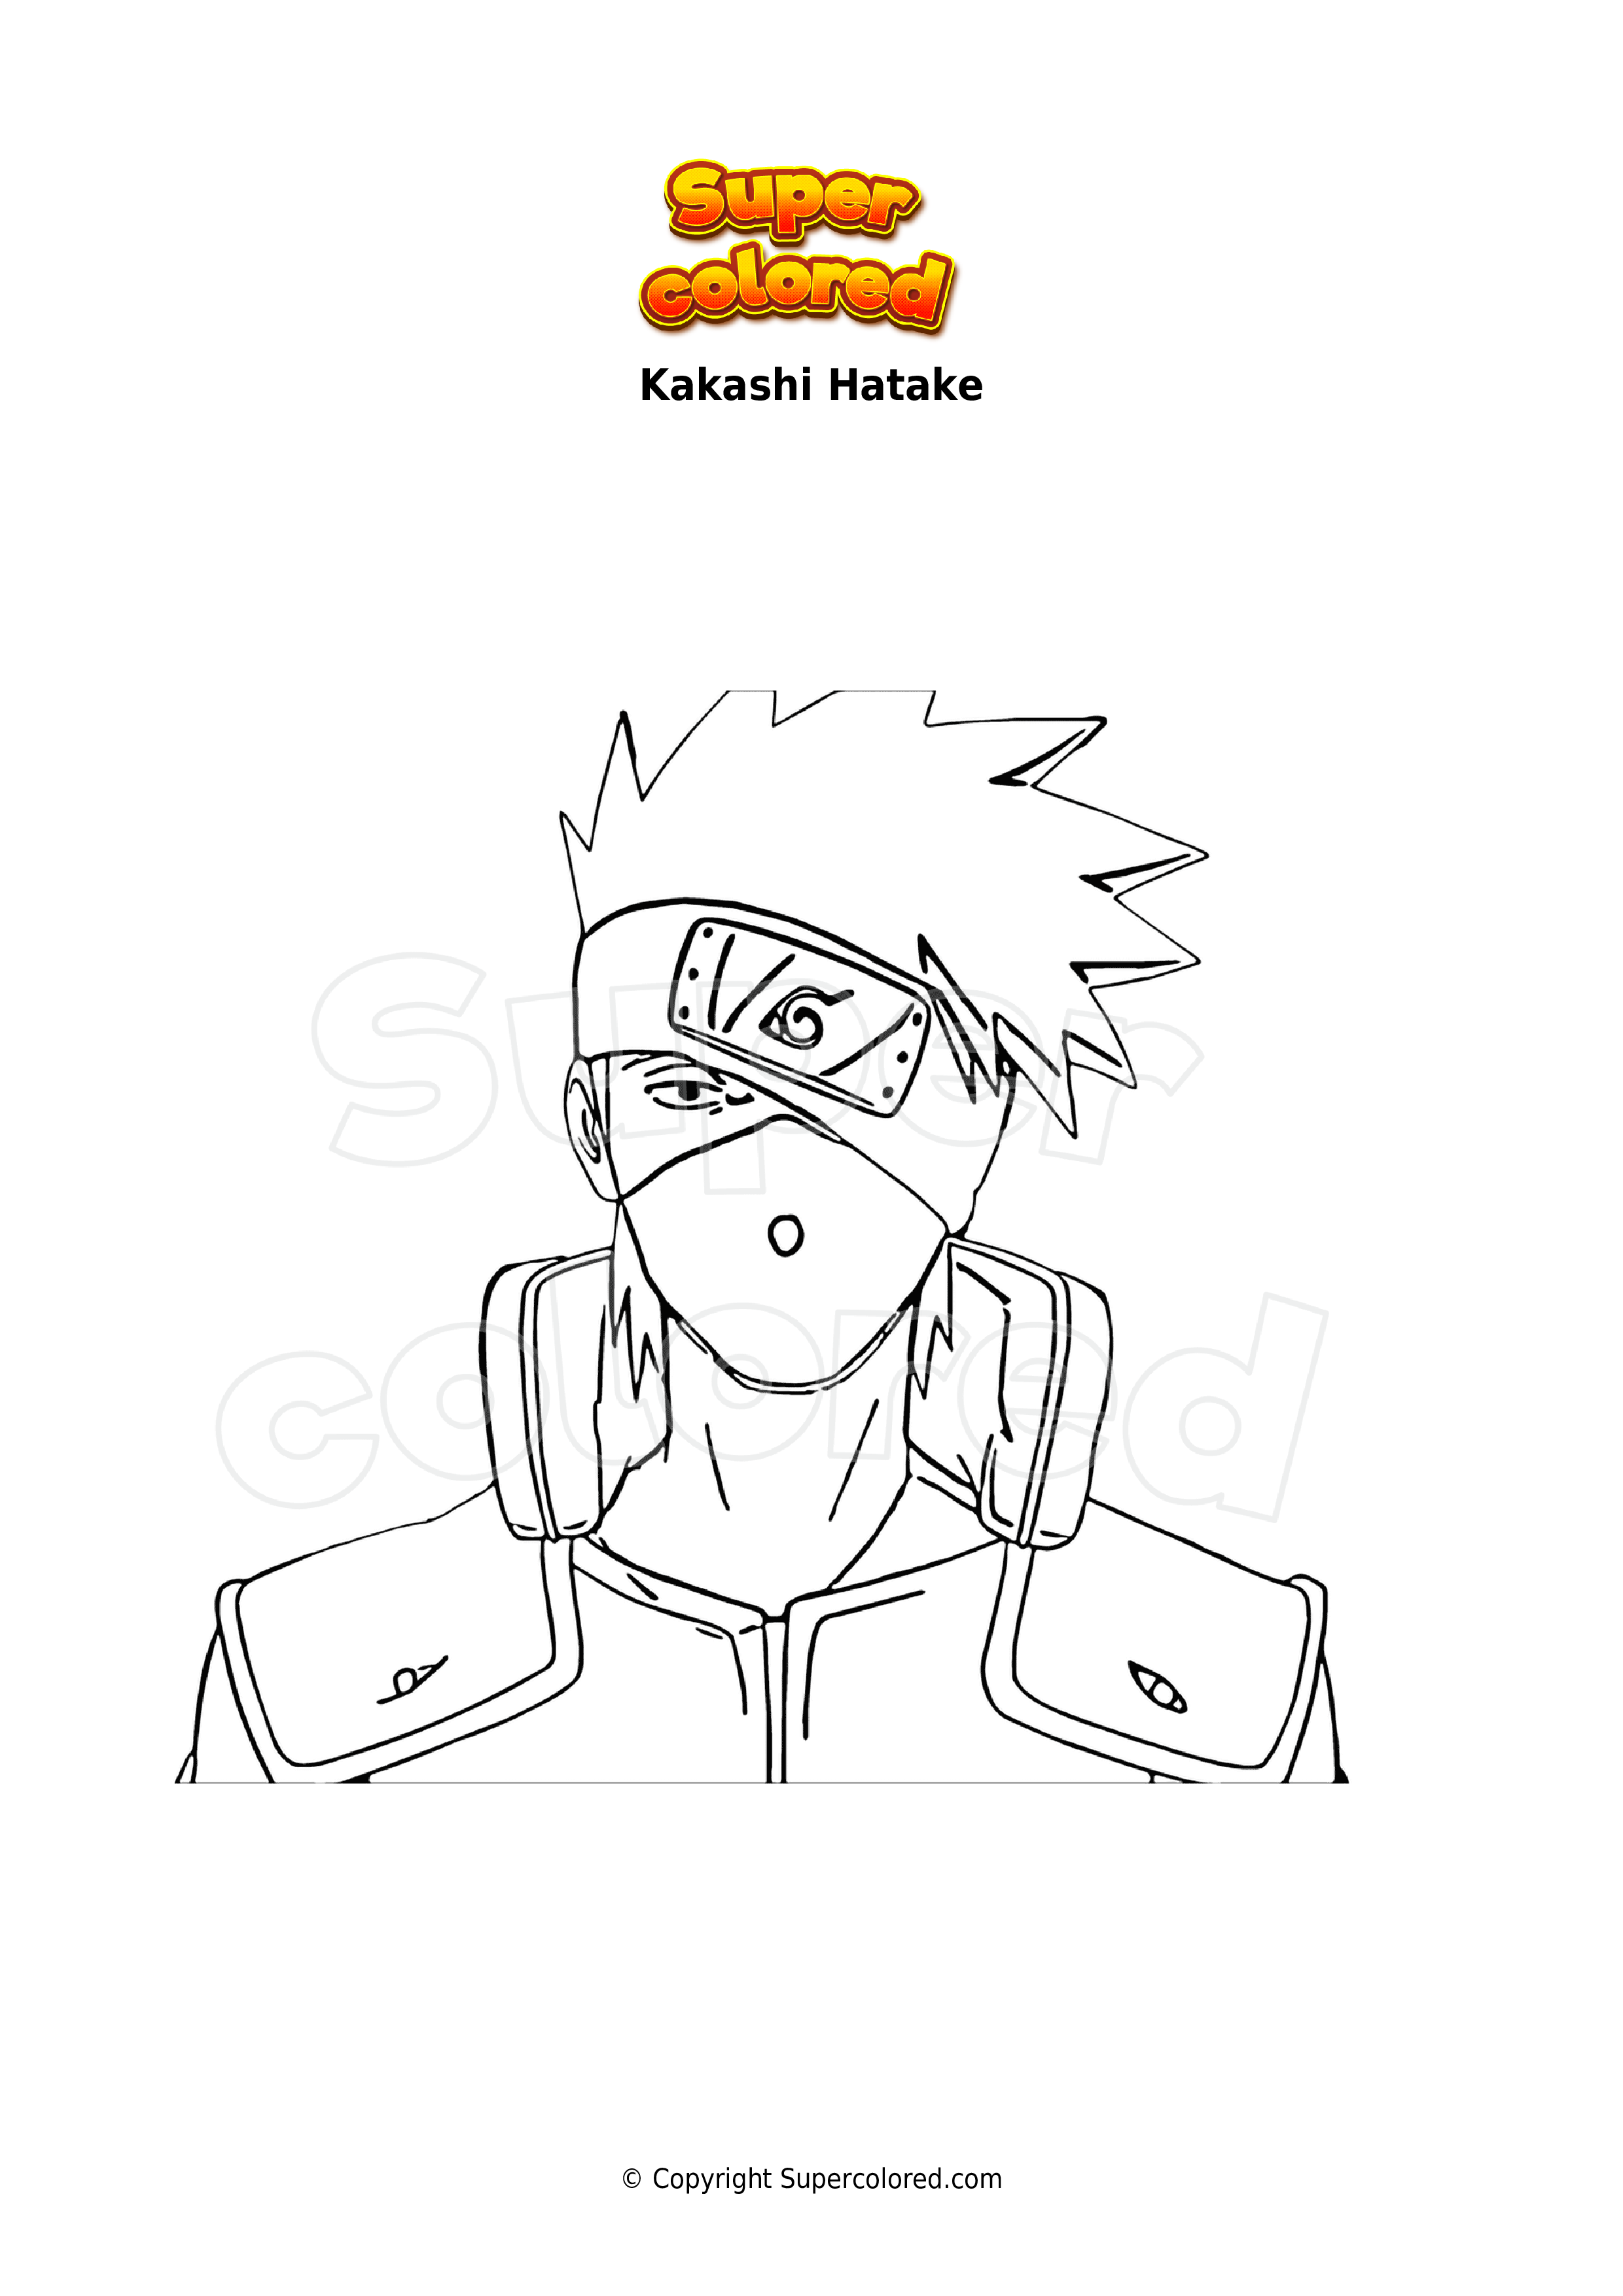 Coloring page - Leader - Kakashi Hatake